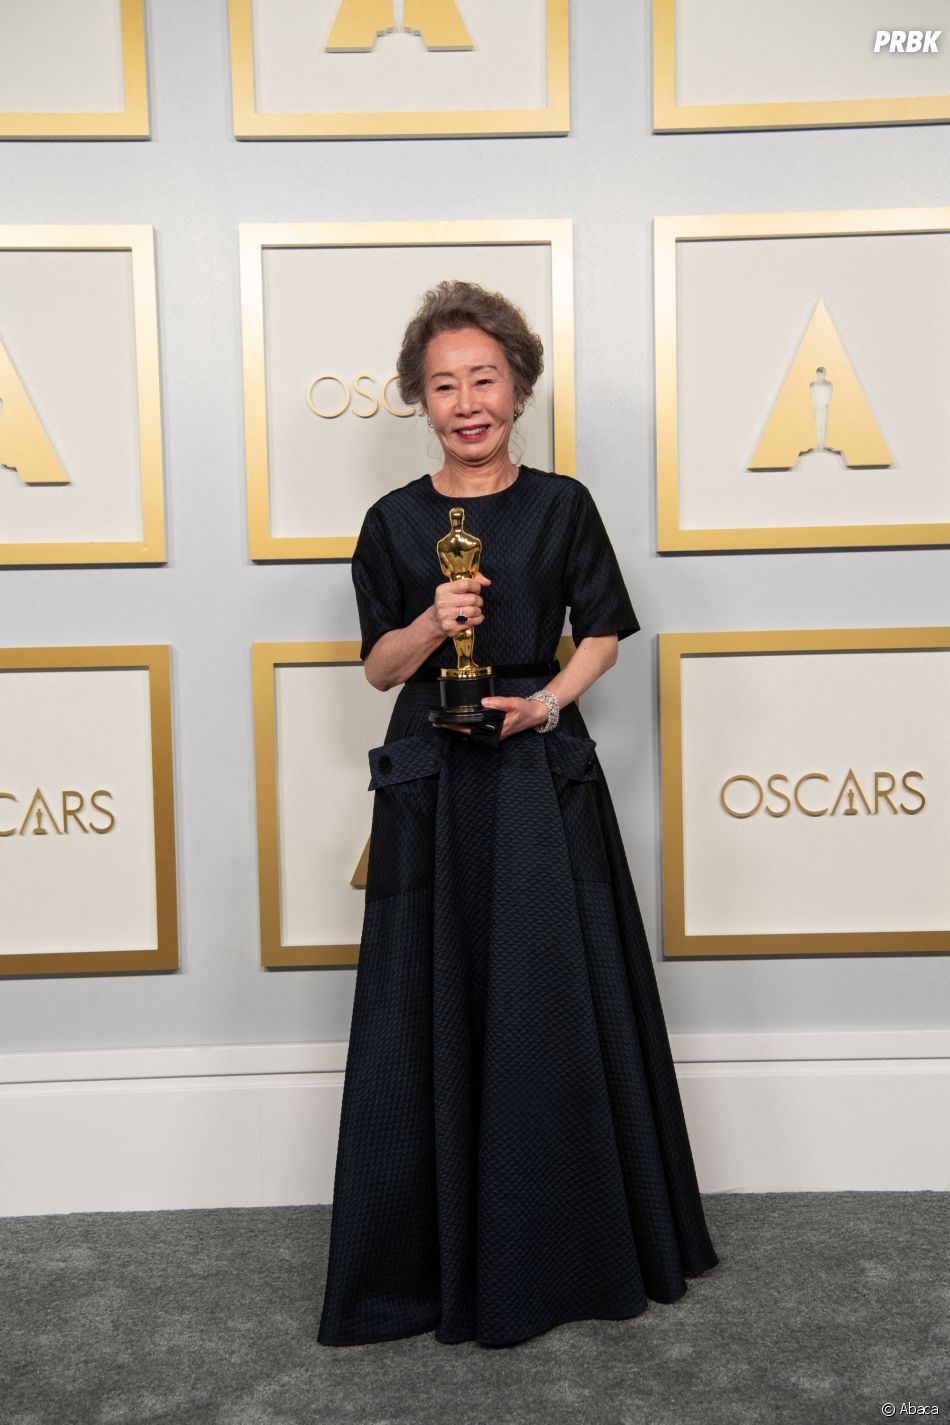 Oscars 2021 : Nomadland, Soul et The Father gagnants, le palmarès complet. Ici,  Yuh-Jung Youn 